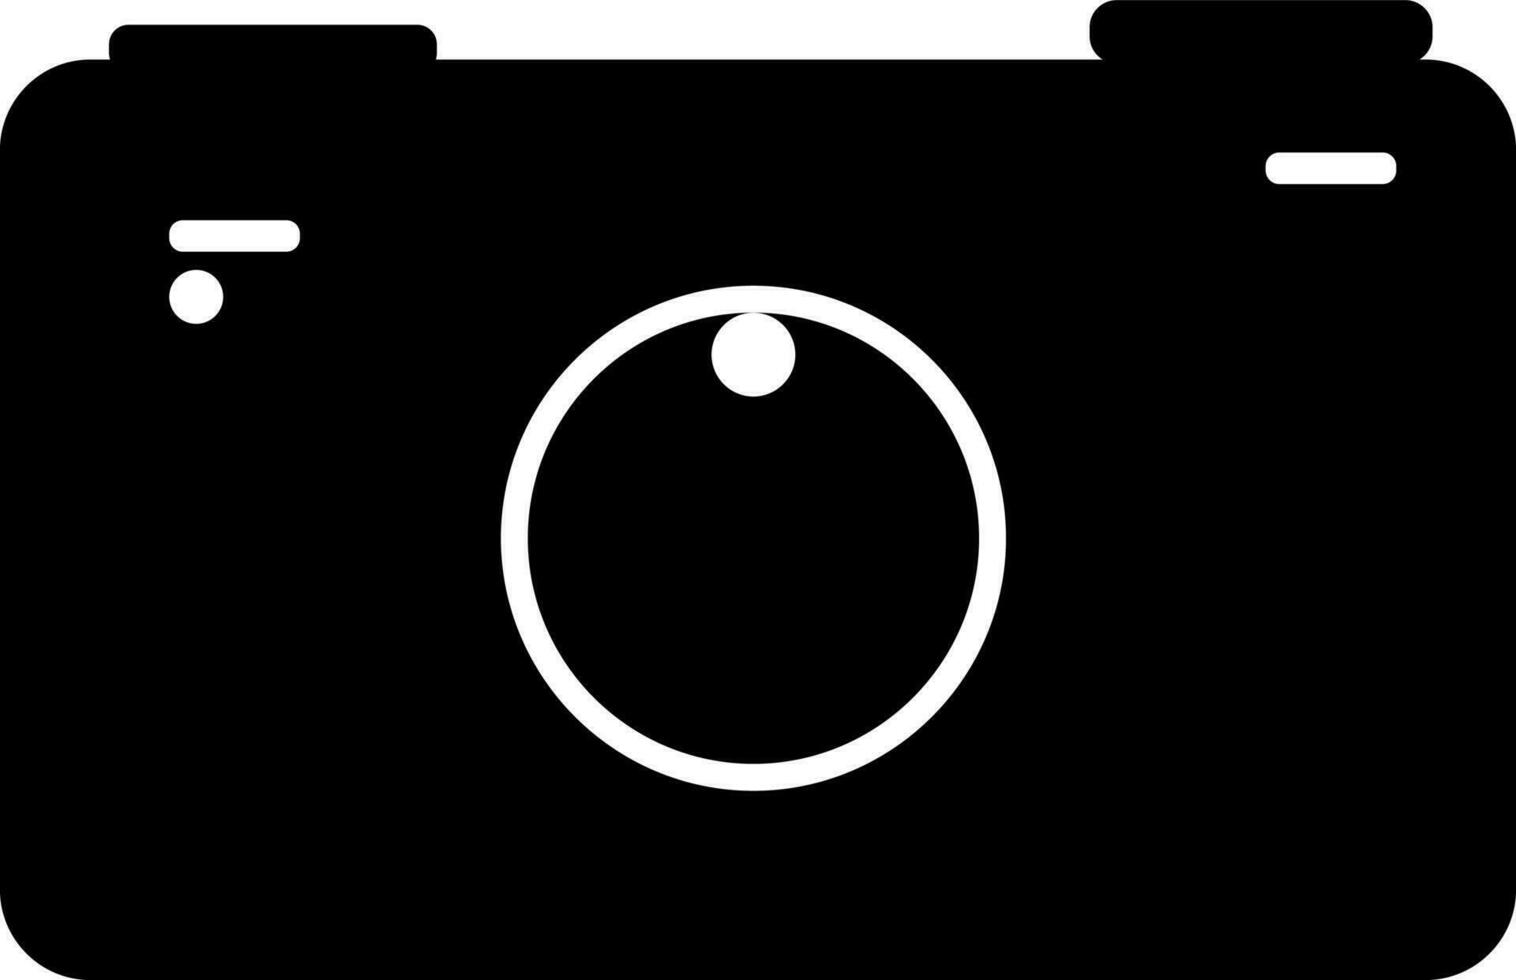 zwart en wit illustratie van een camera. vector